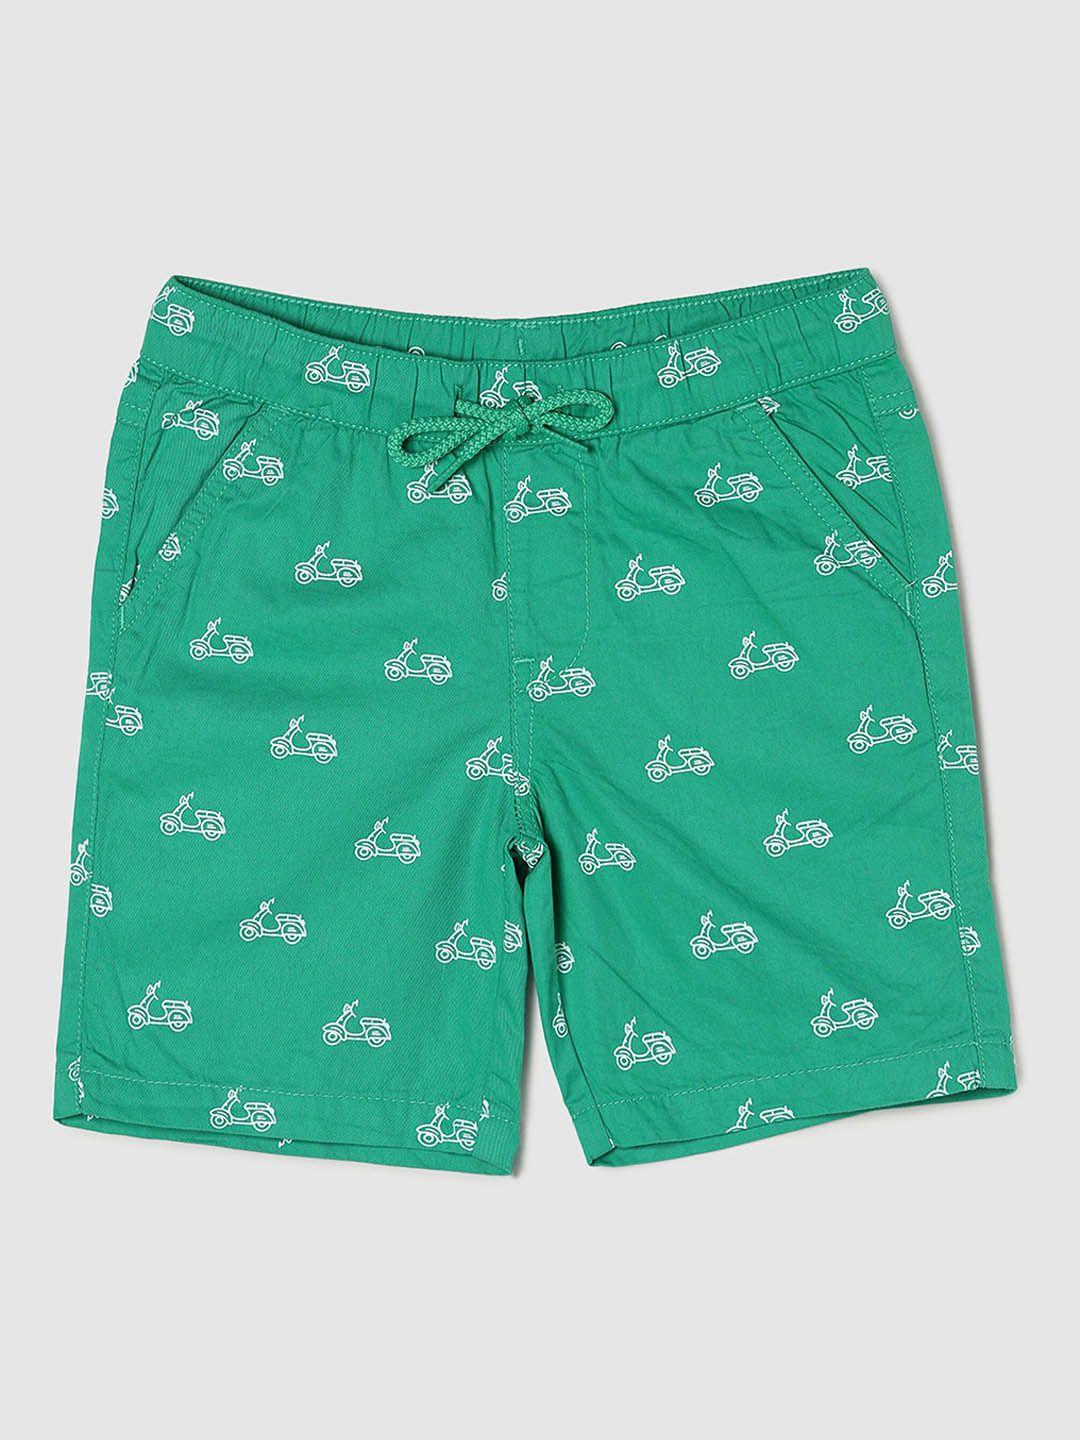 max boys green conversational printed shorts